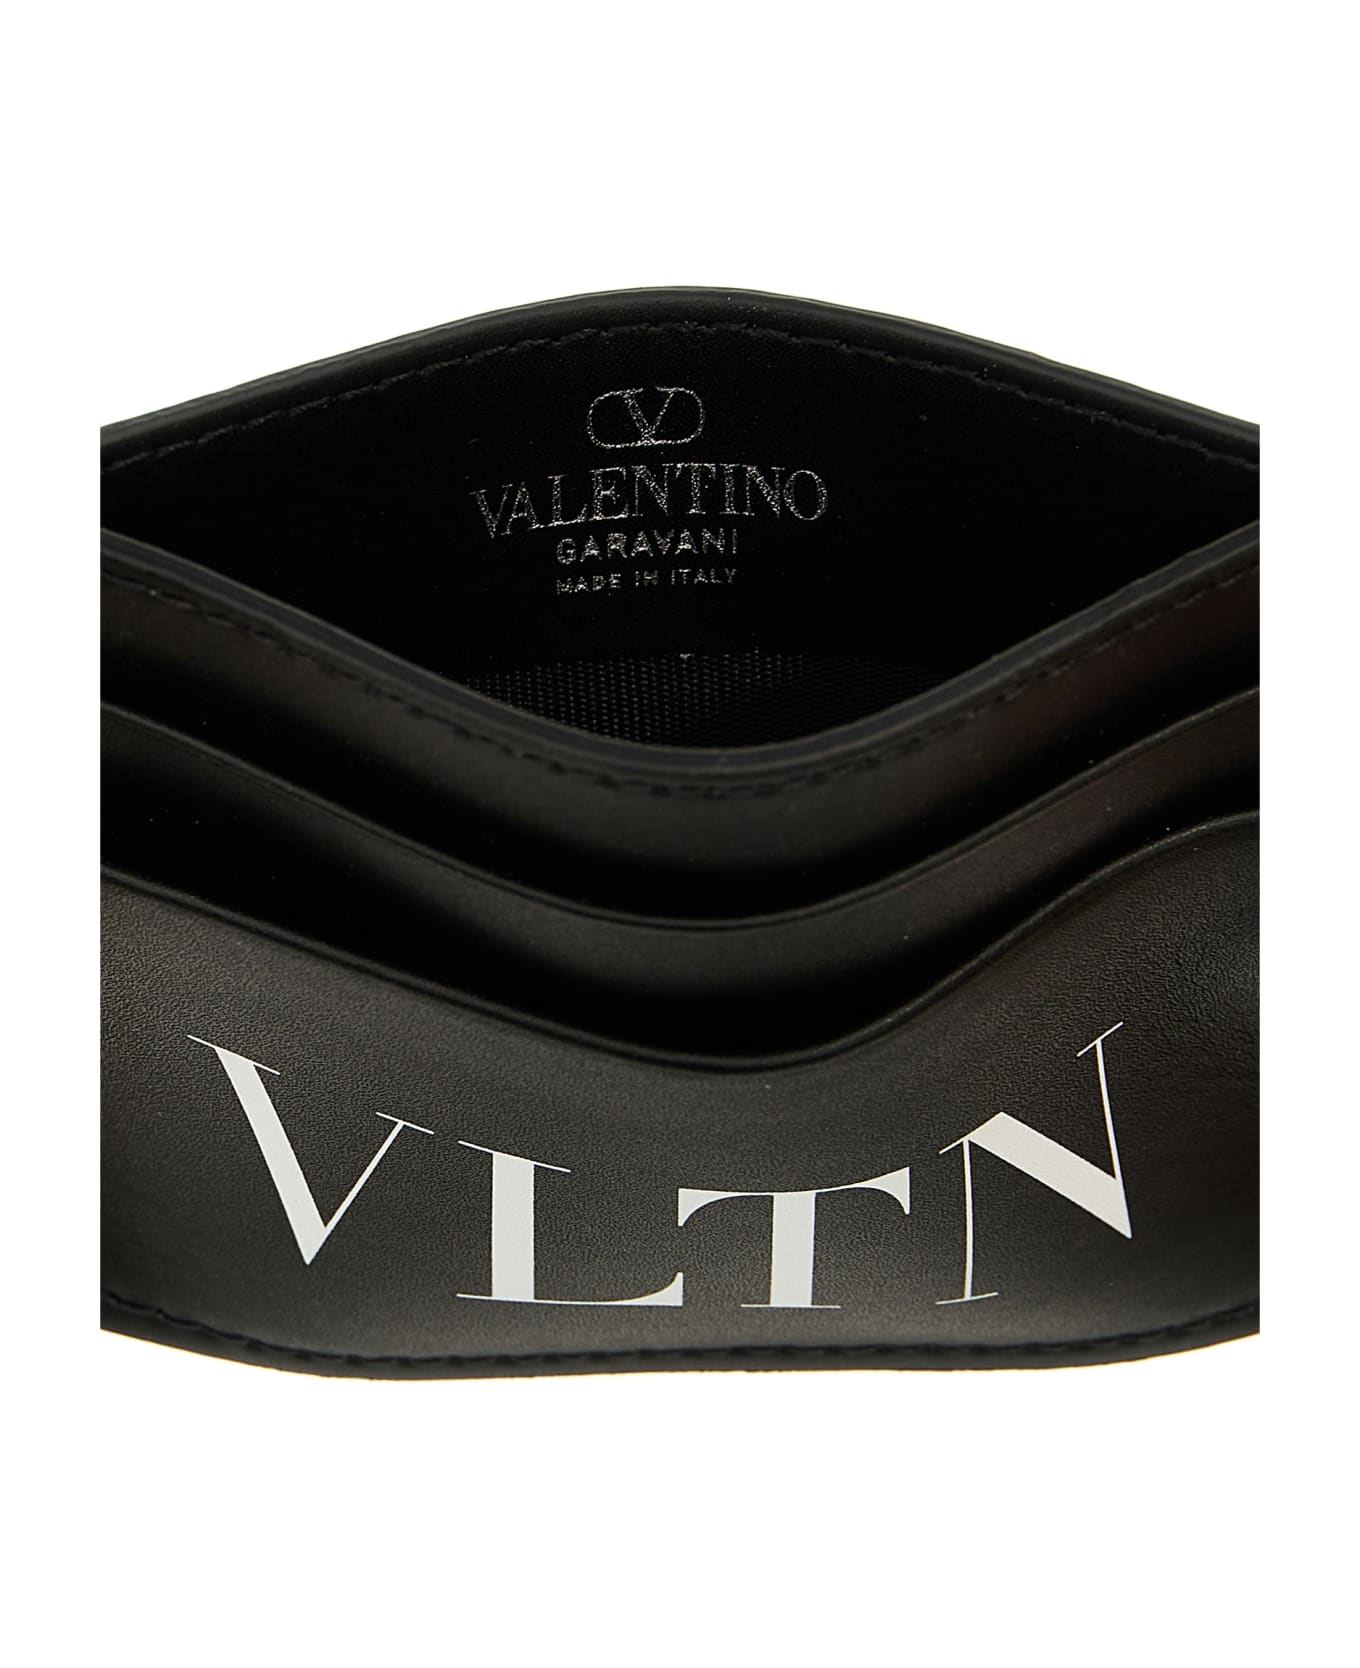 Valentino Garavani 'vltn' Cardholder - White/Black 財布